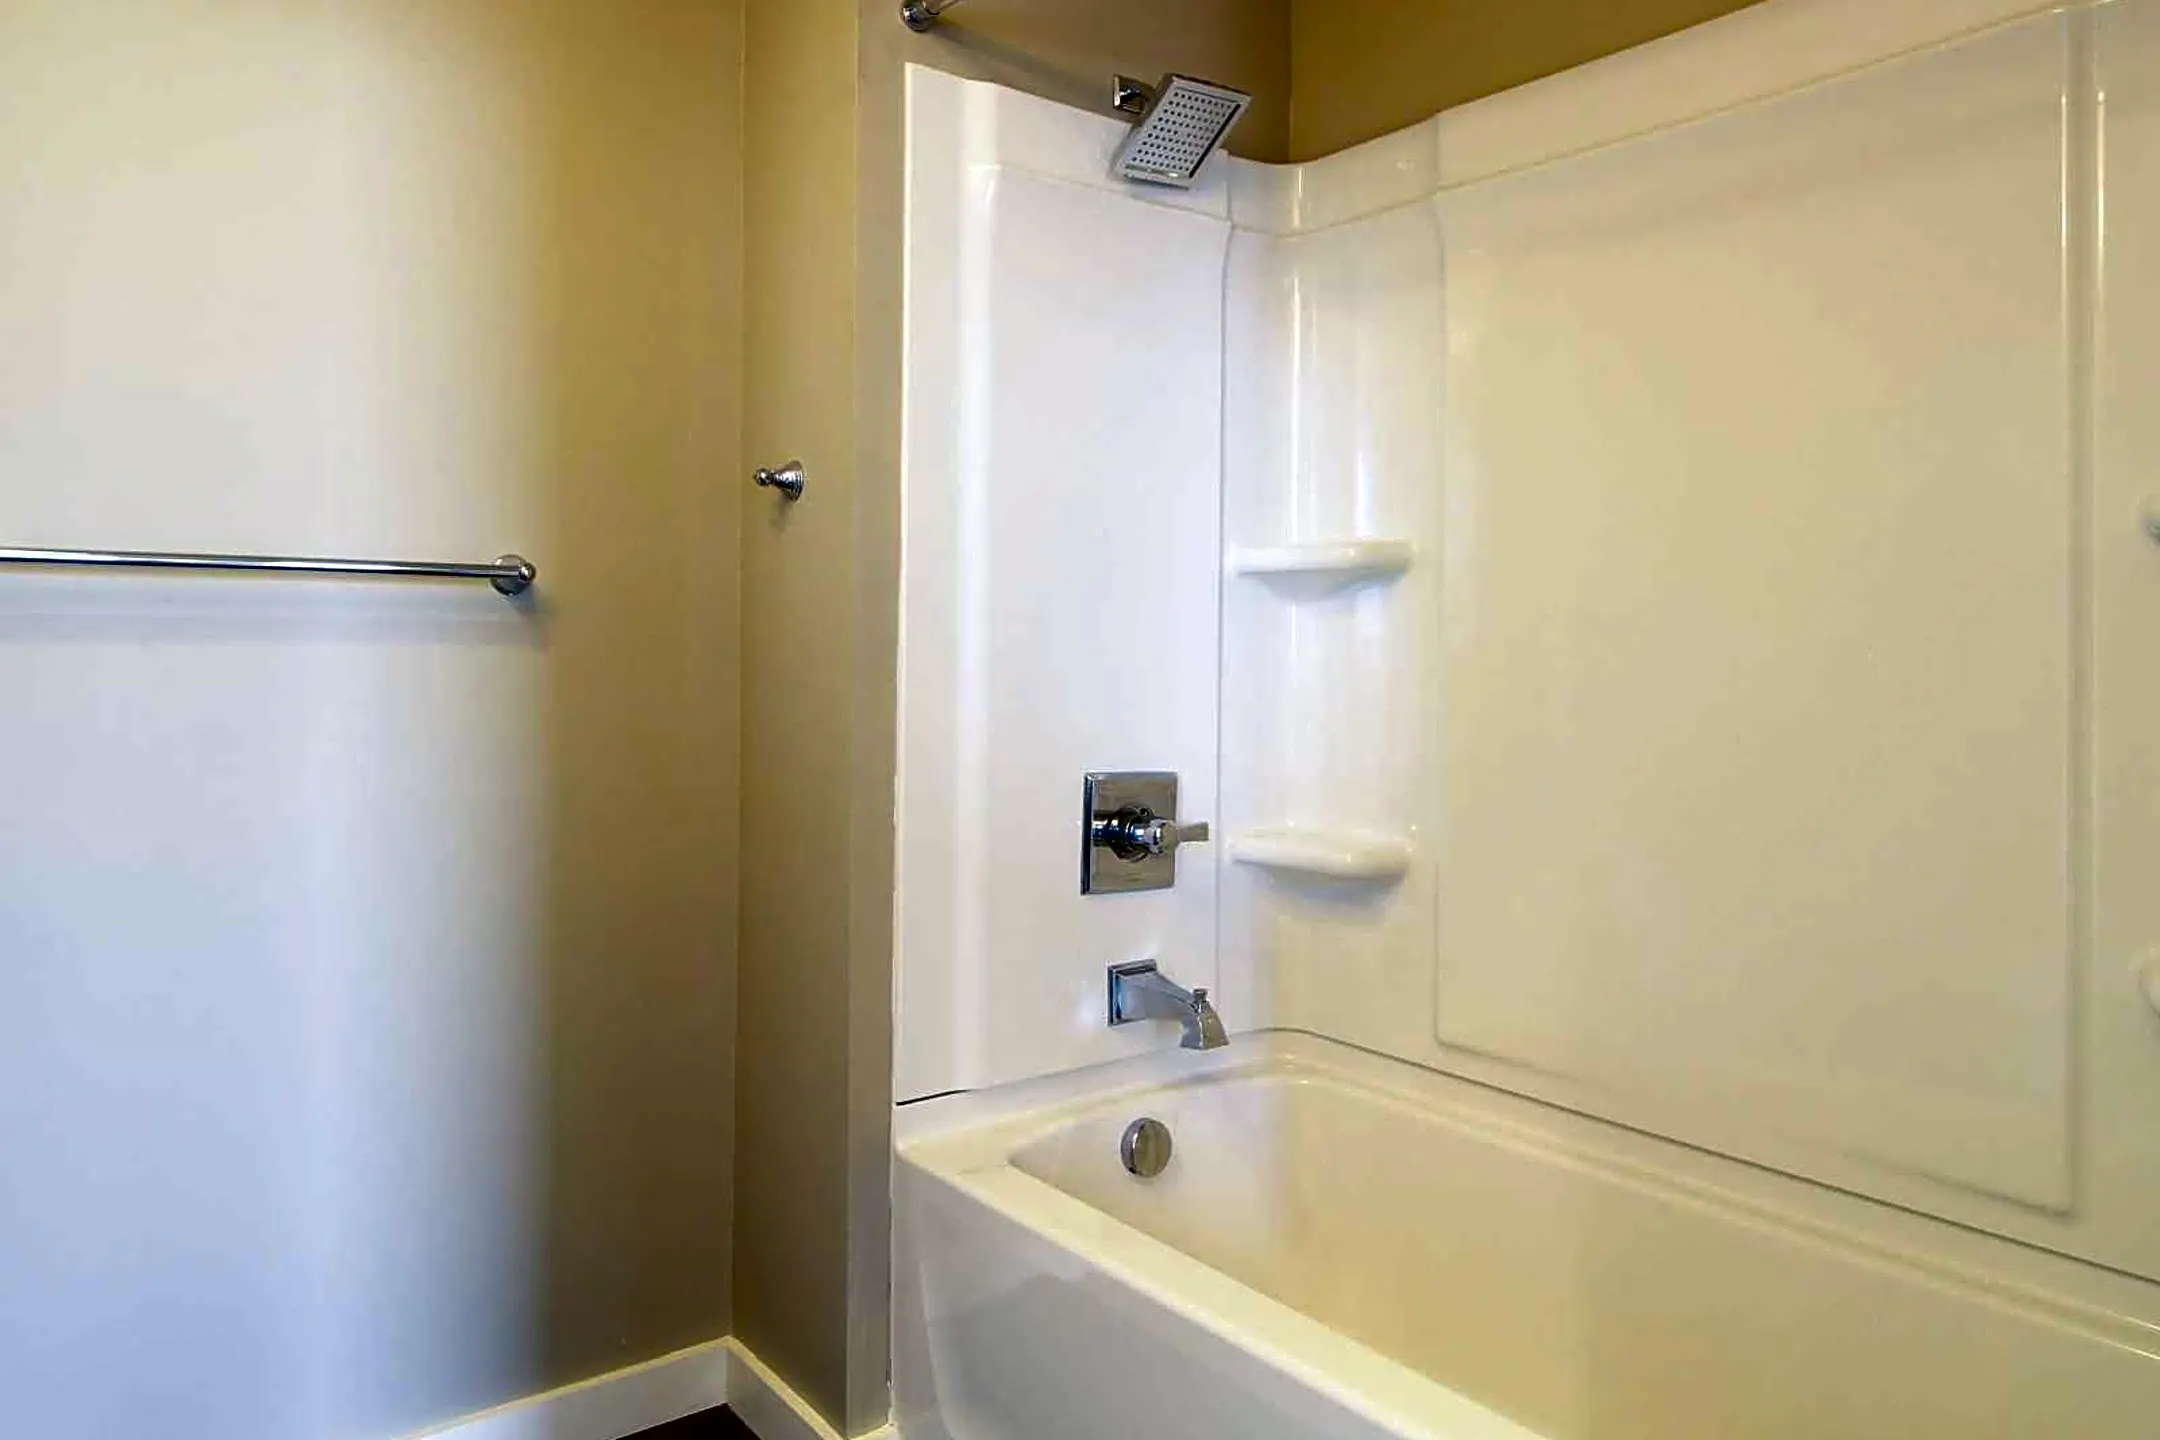 Bathroom - Studebaker Lofts - South Bend, IN